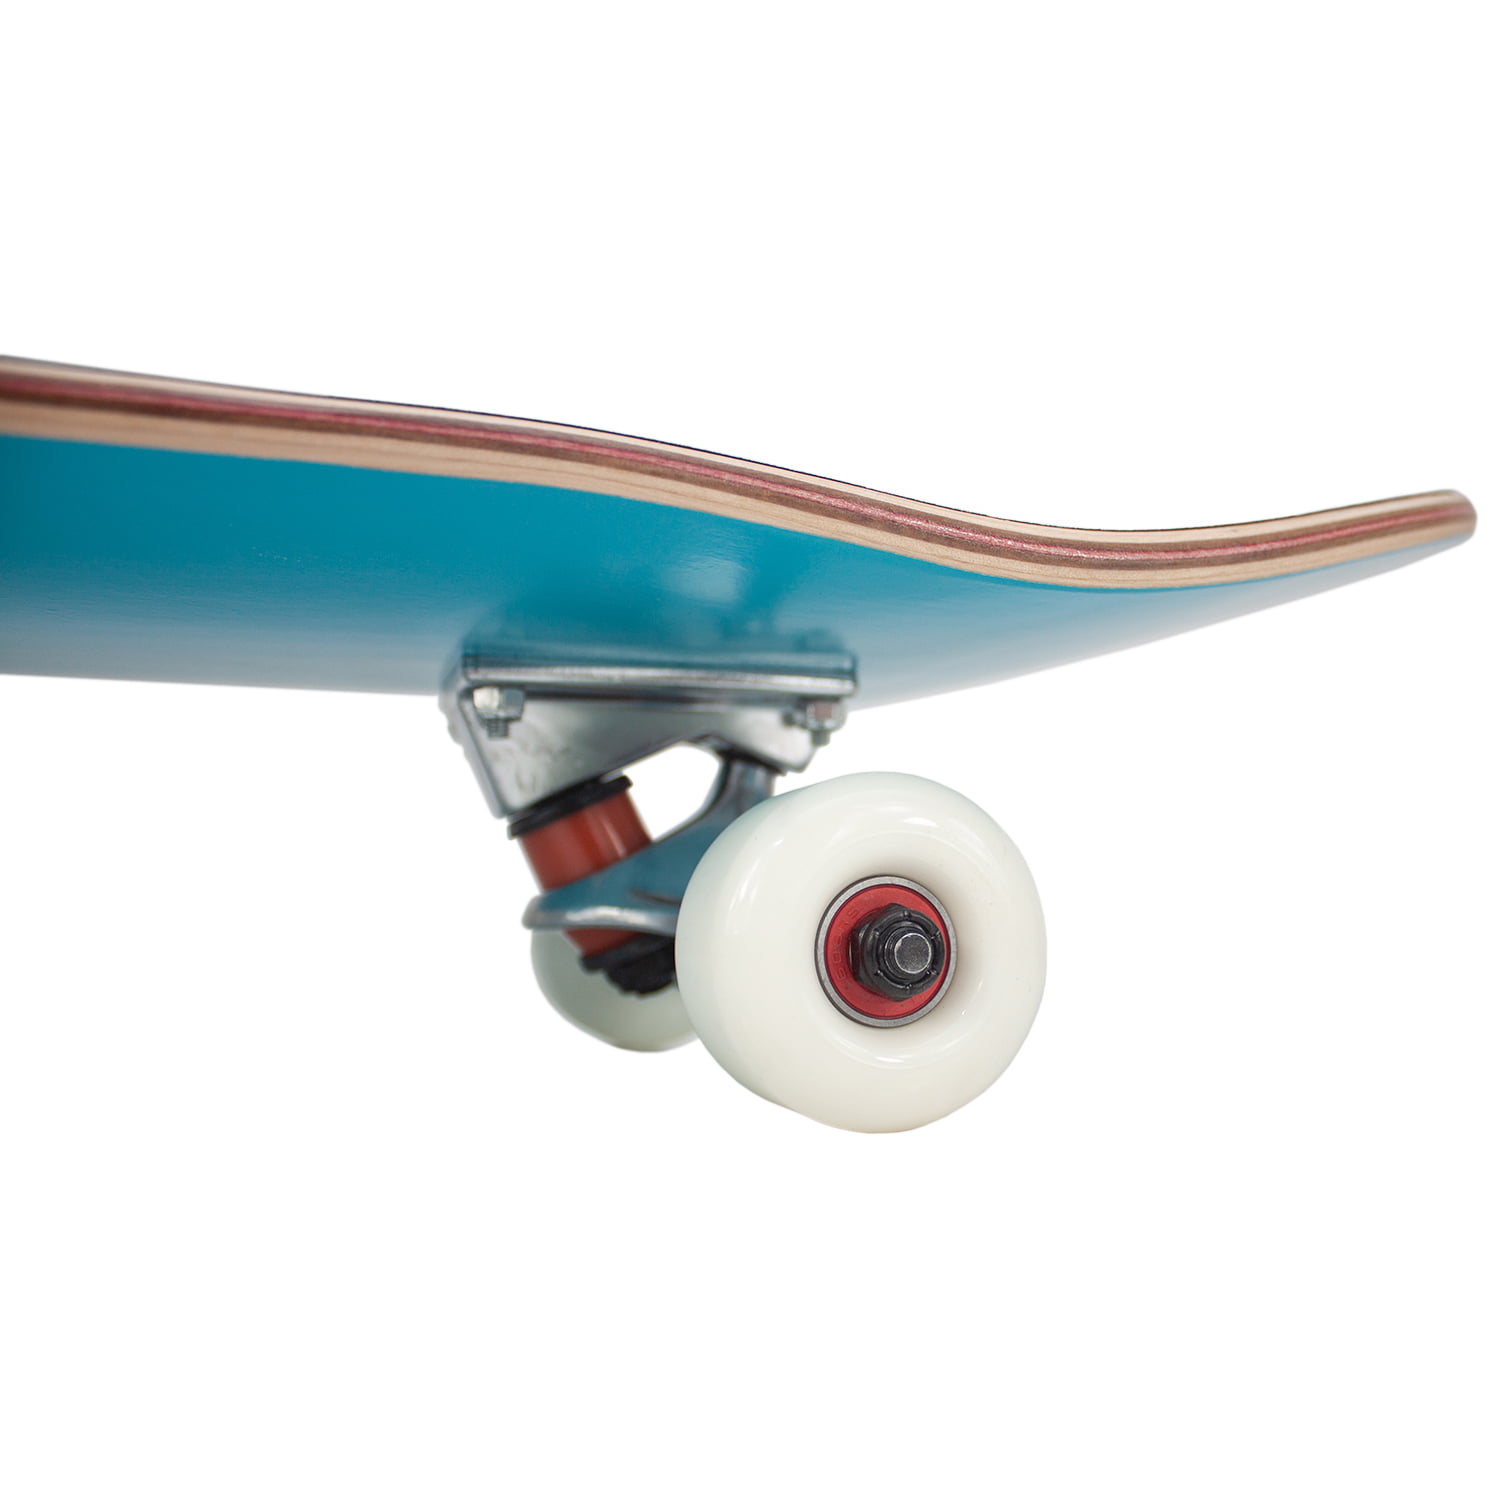 Retrospec Alameda Skateboard Complete with Abec-11 & Canadian Maple Deck 